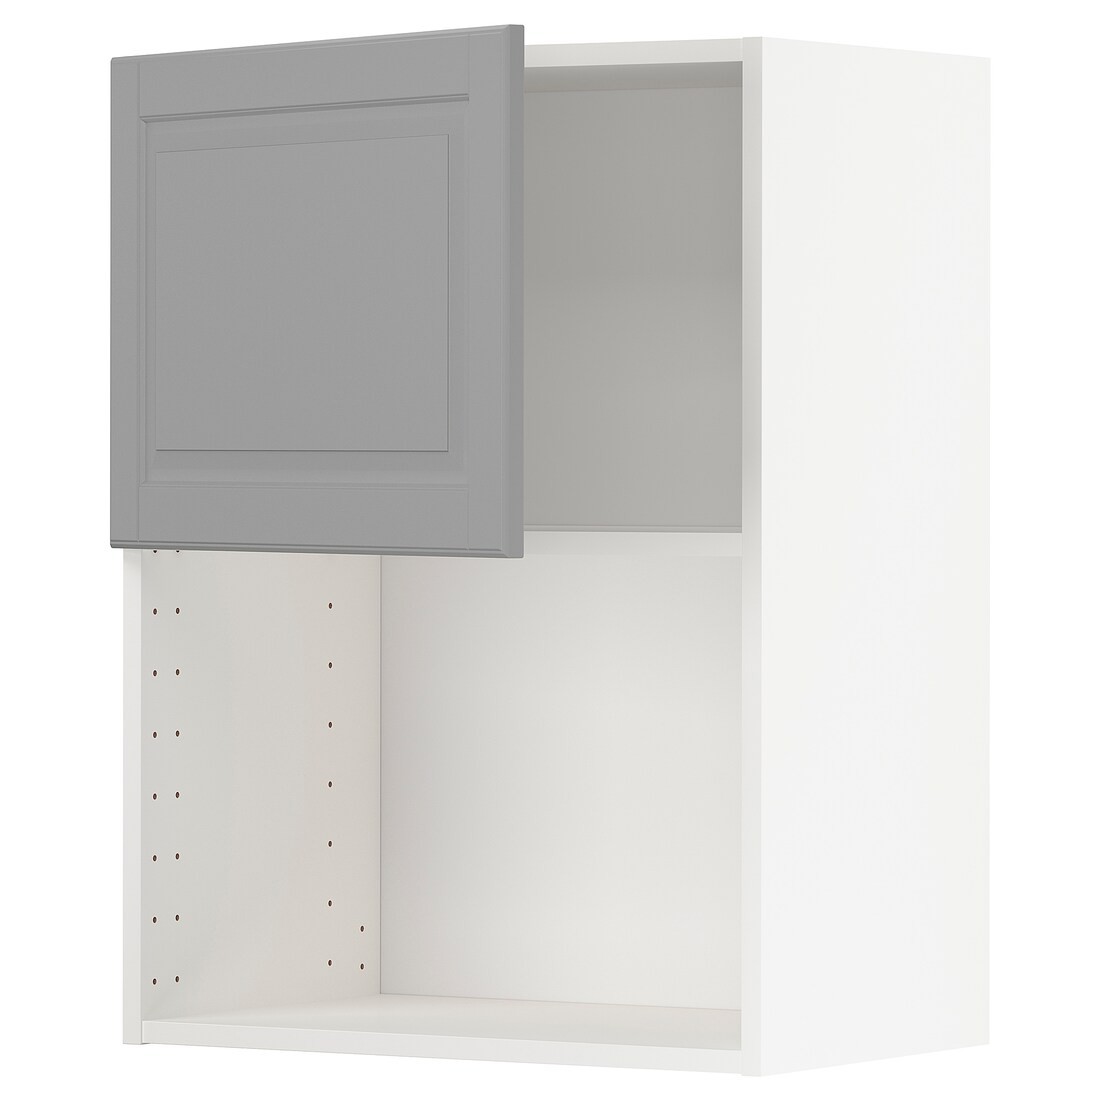 IKEA METOD МЕТОД Навісна шафа для НВЧ-печі, білий / Bodbyn сірий, 60x80 см 99466127 994.661.27